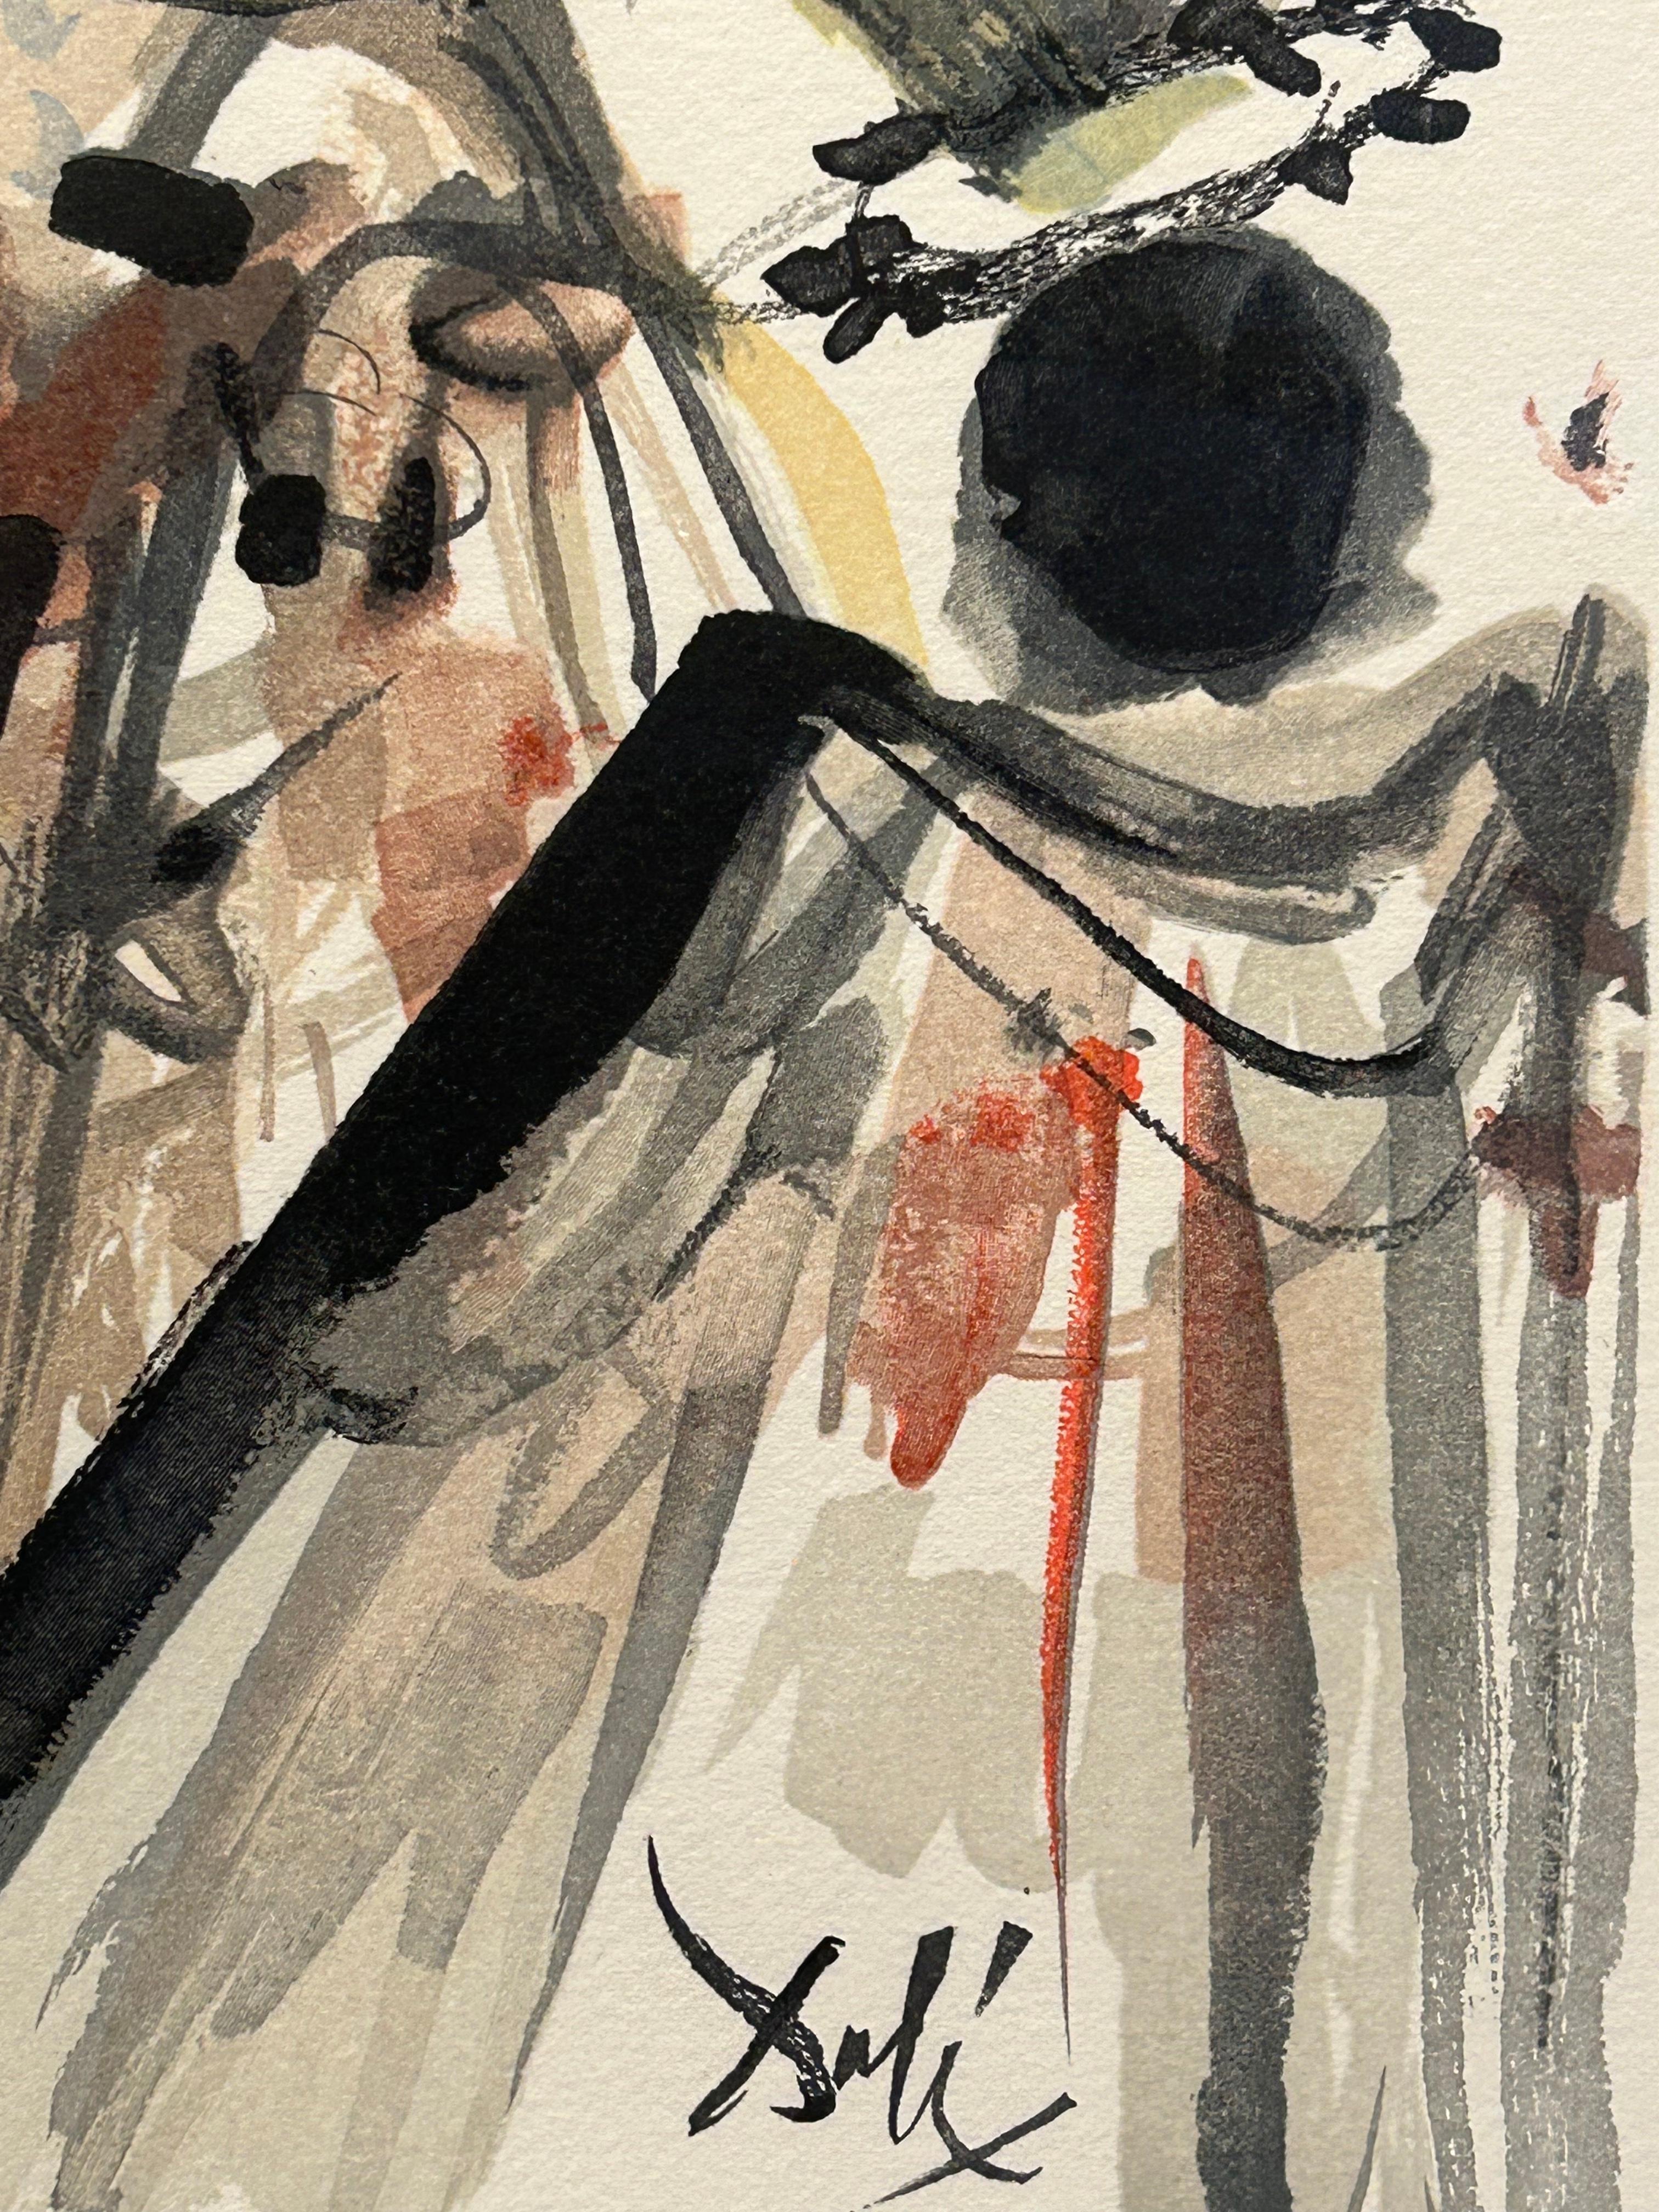 'On Voit cette Reine...' Farblithographie aus 'L'Art d'Aimer d'Ovide'. (Surrealismus), Print, von Salvador Dalí